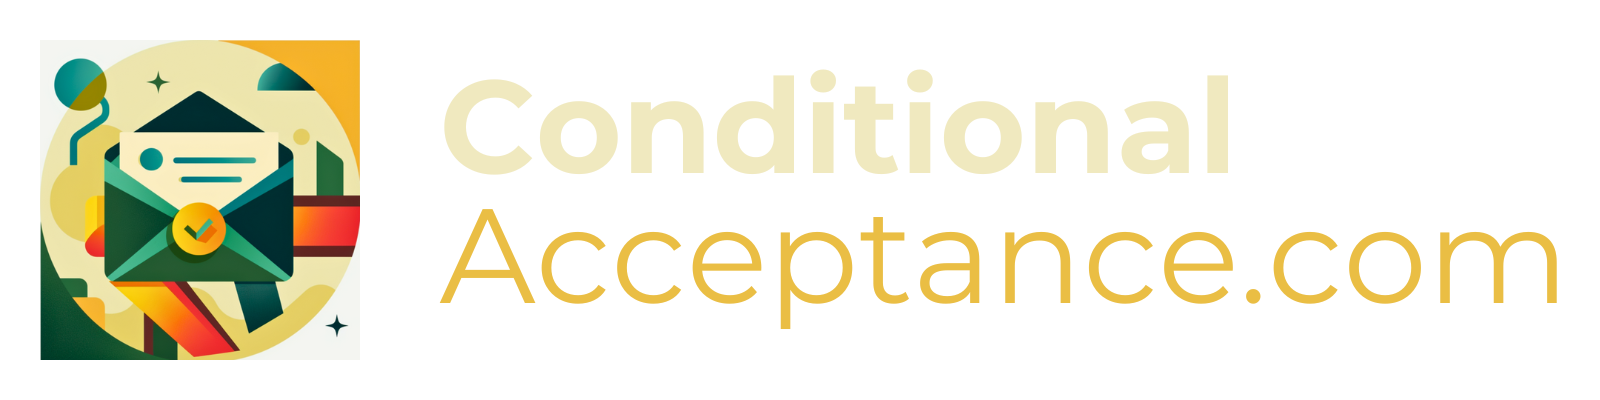 ConditionalAcceptance.com - Logo v2.1